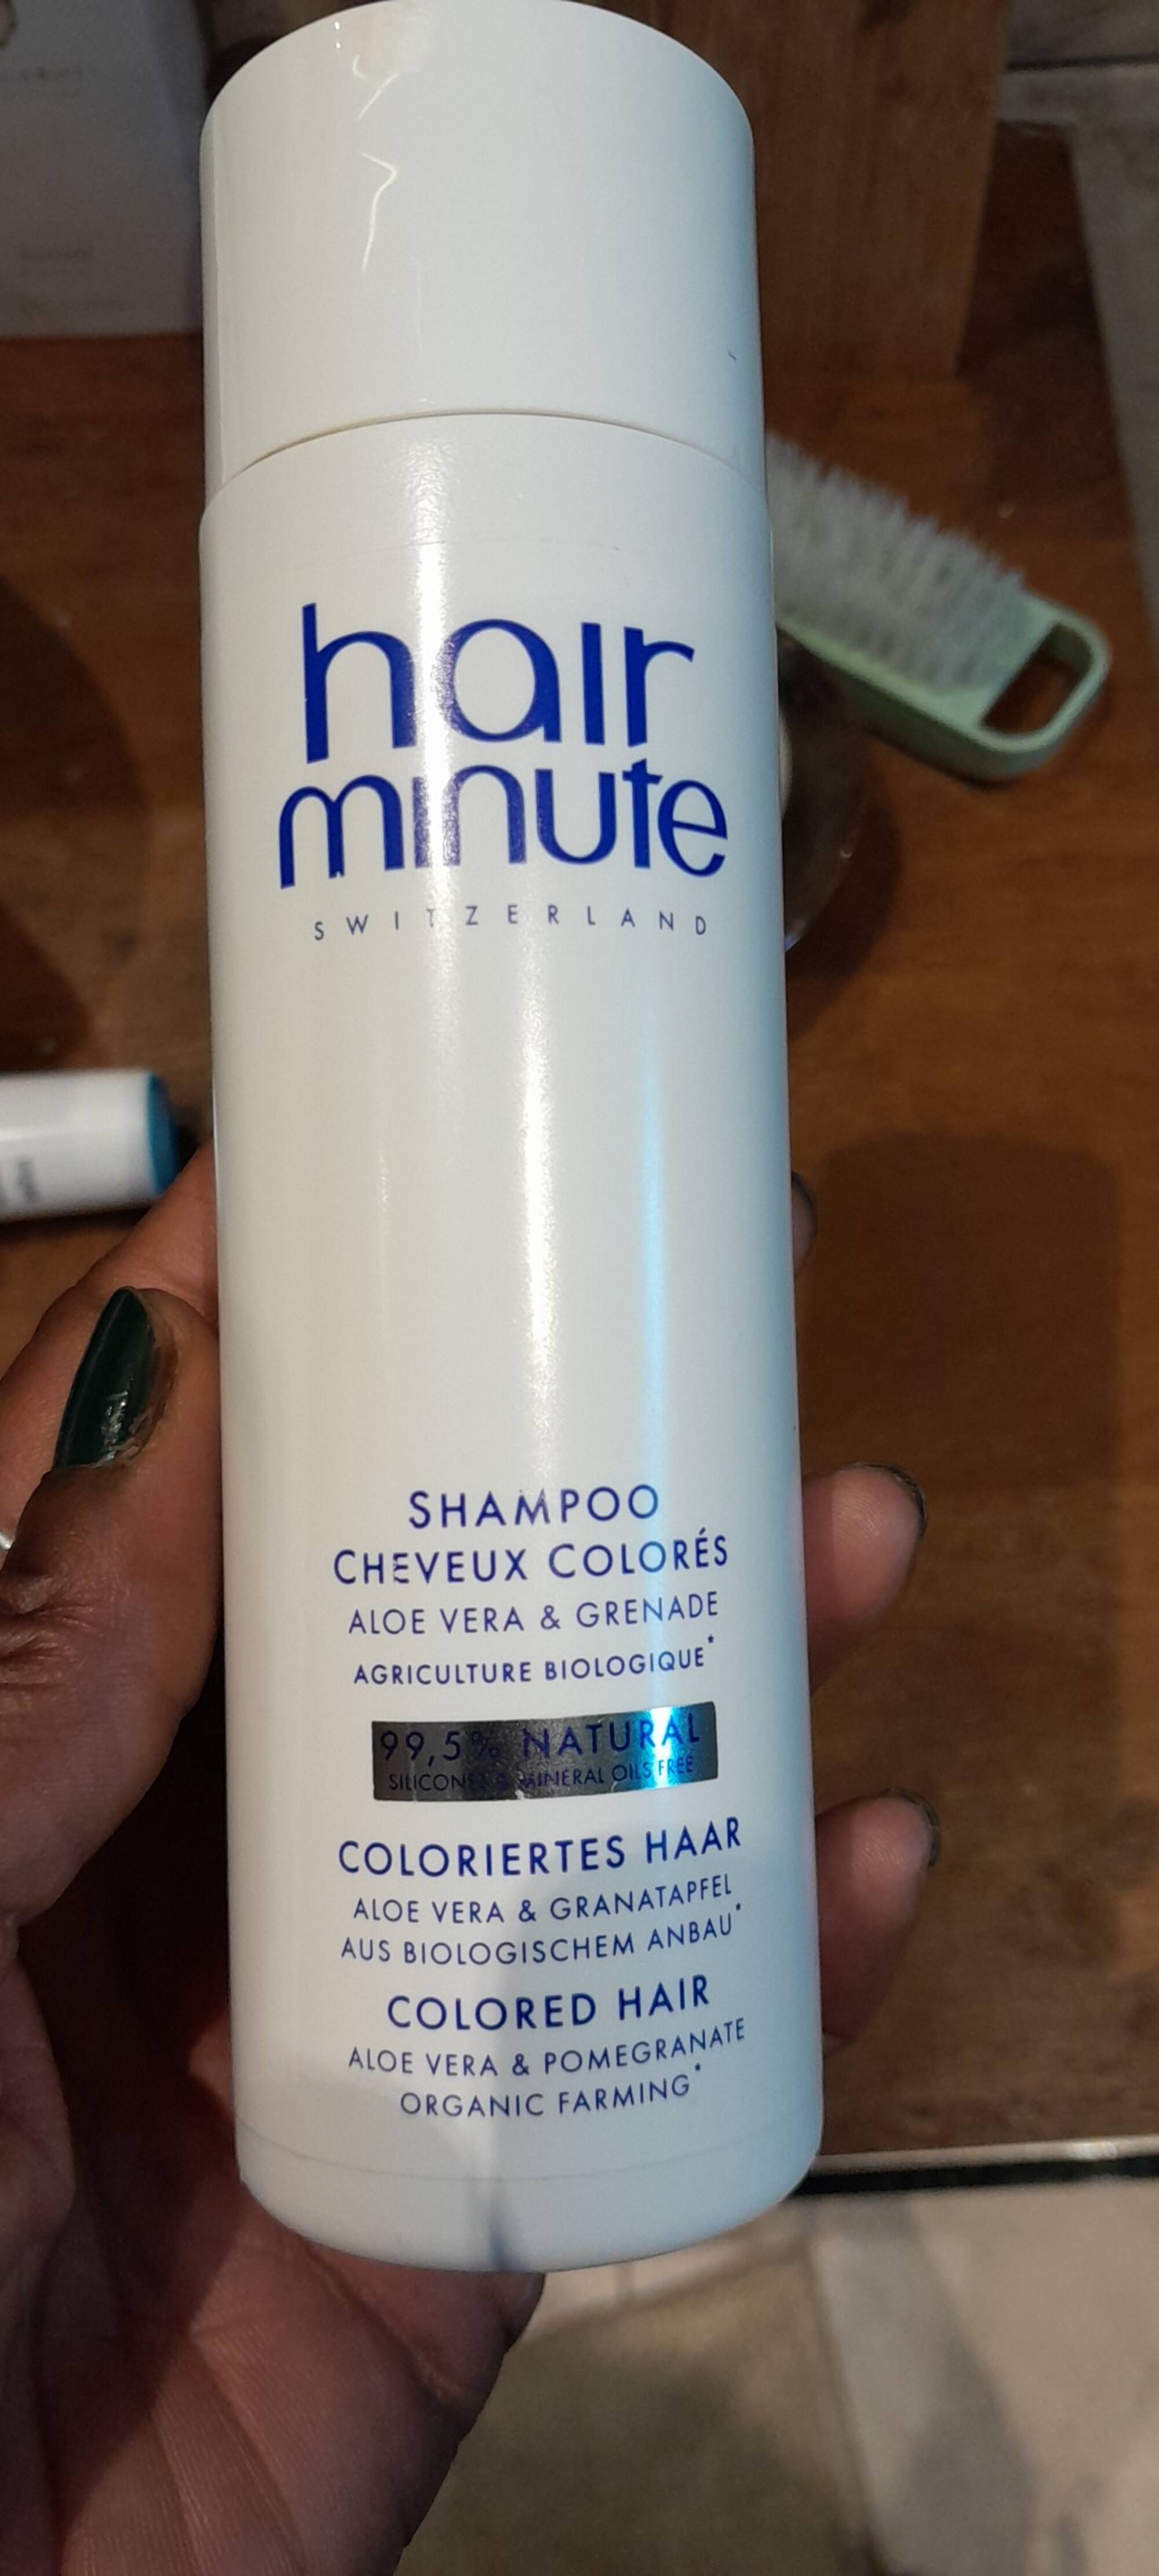 BODY'MINUTE - Hair minute - Shampoo cheveux colorés